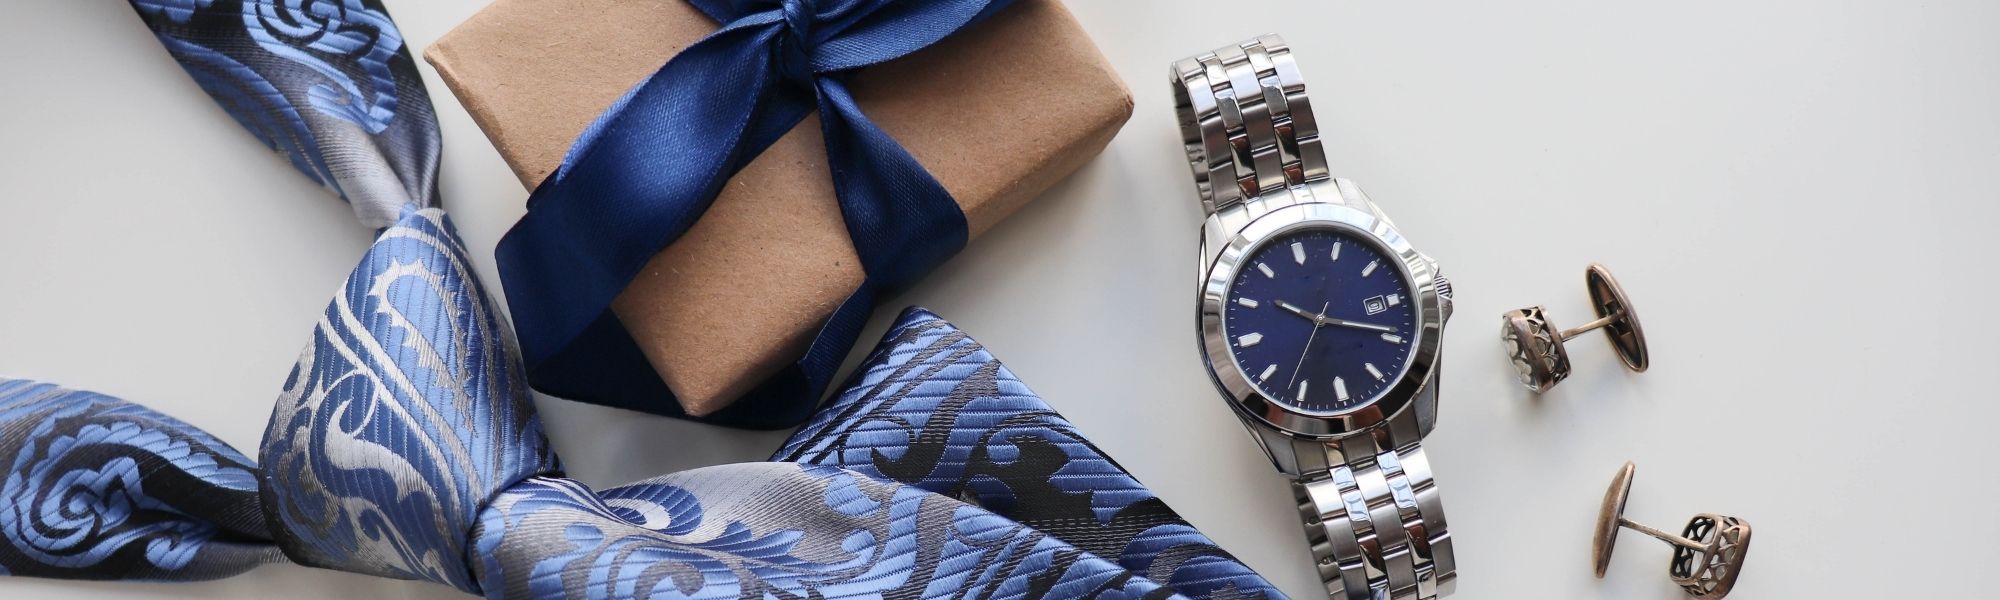 ネクタイ、時計、プレゼントの箱の画像